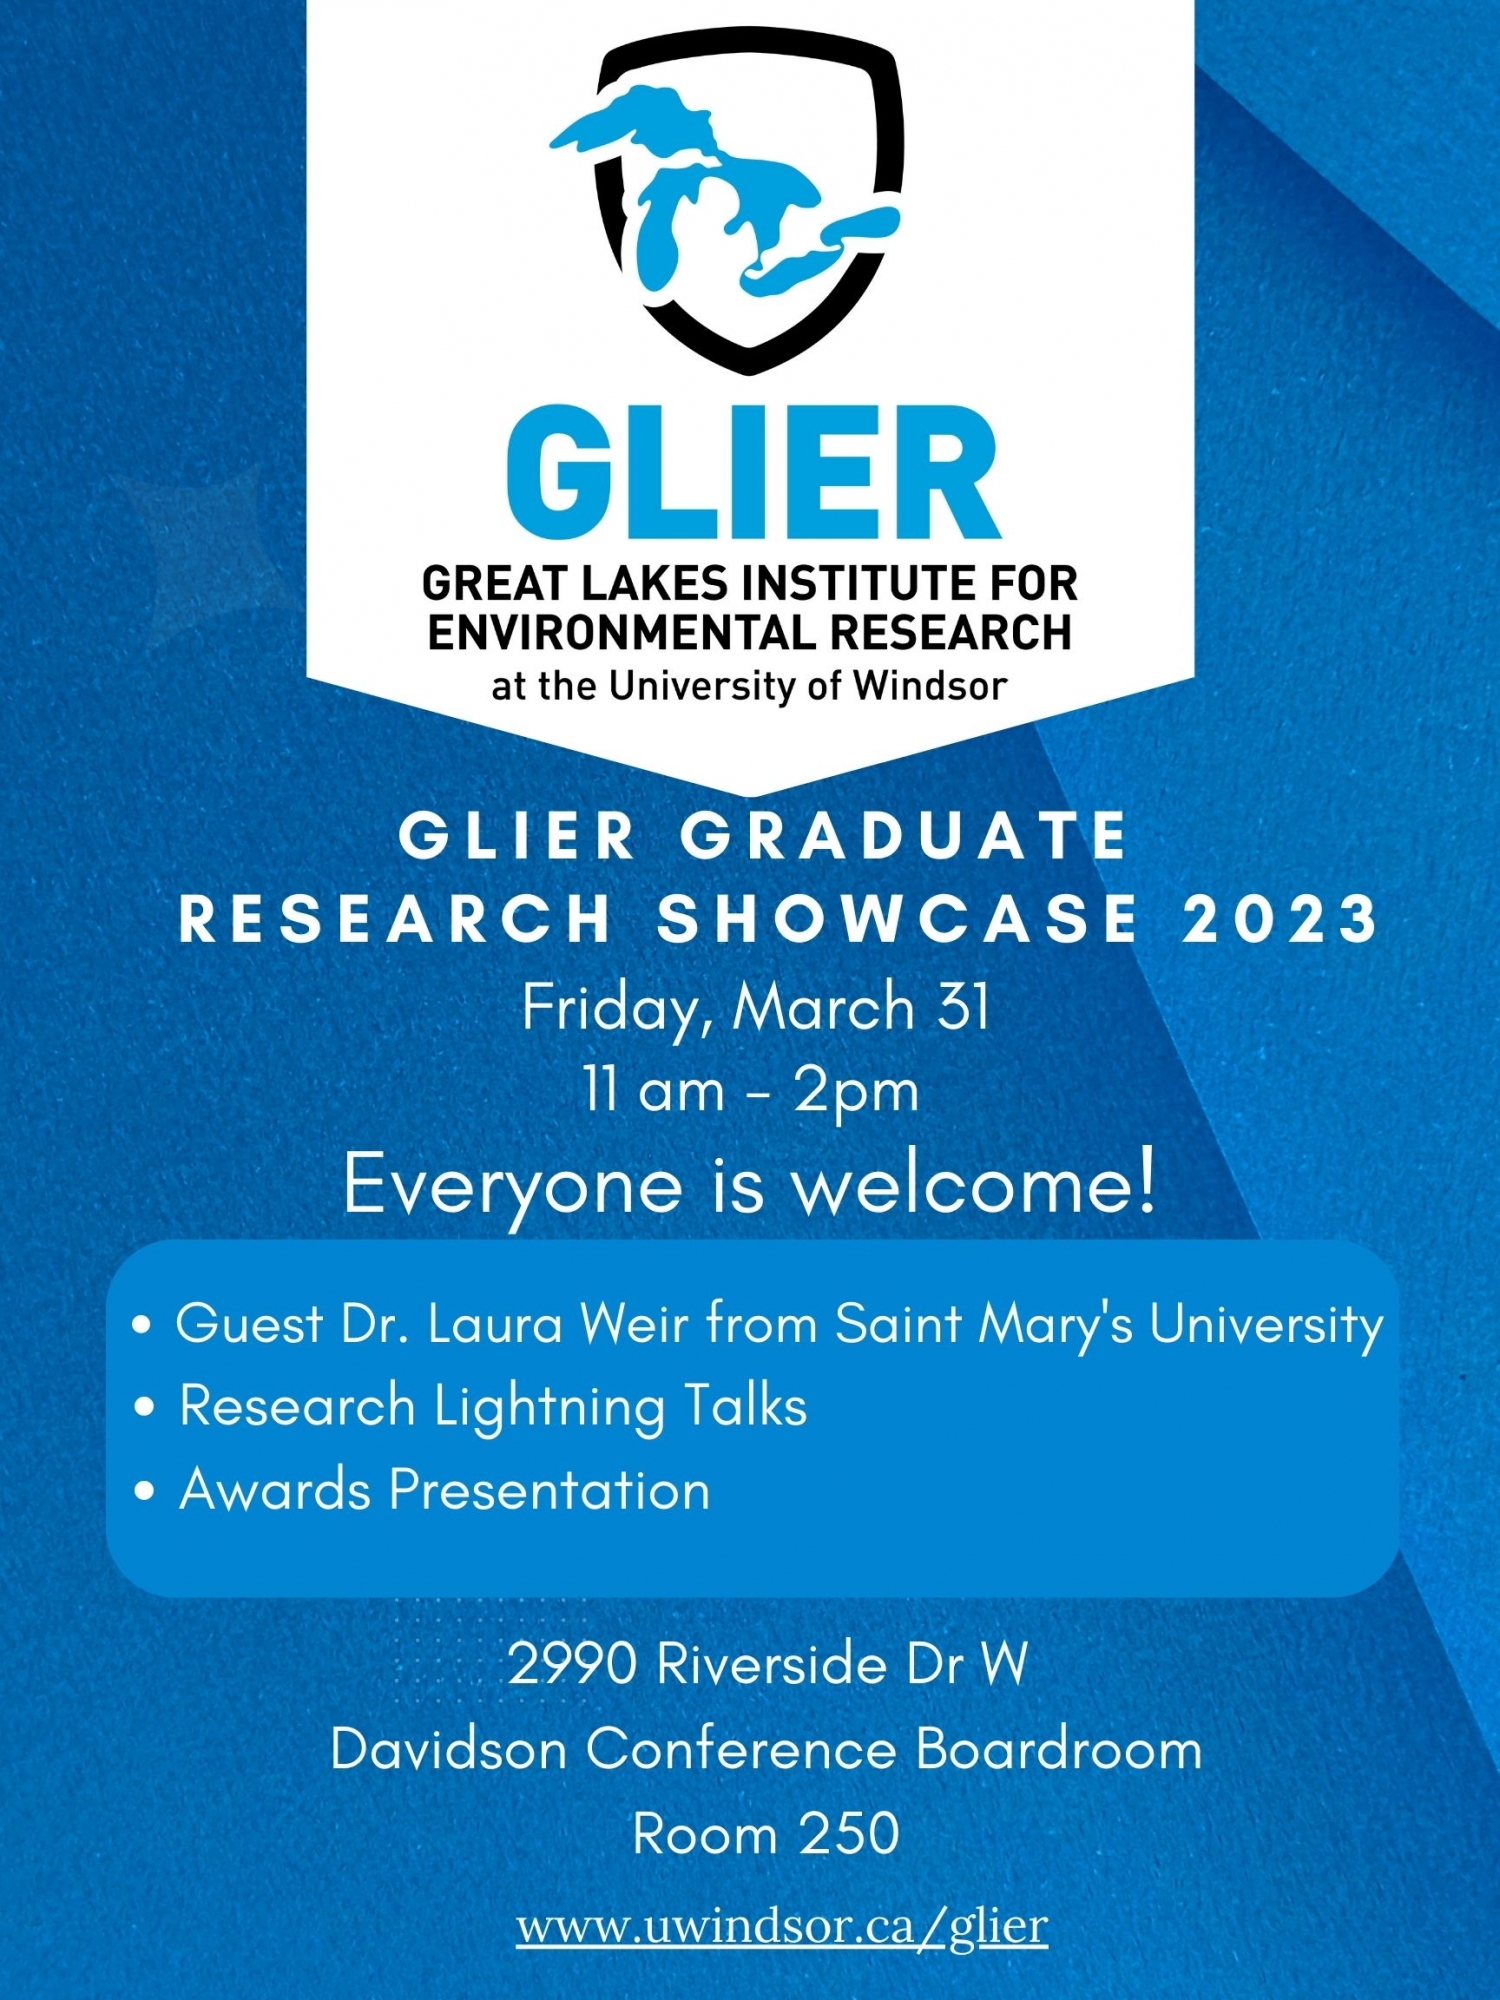 Poster for GLIER grad showcase showing GLIER logo